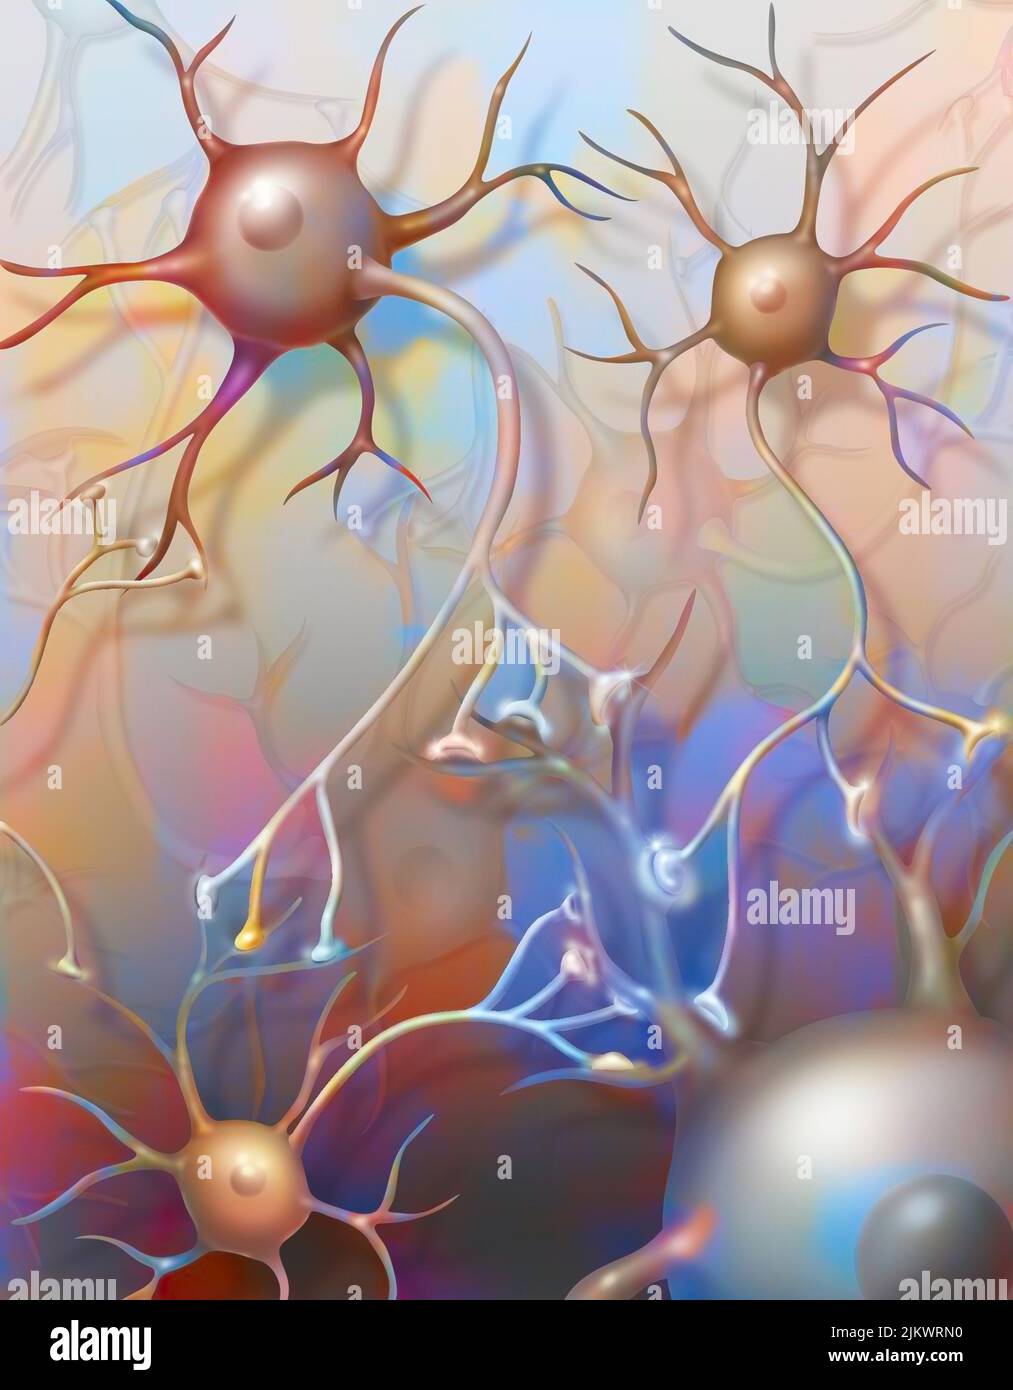 Verbundene Neuronen, die die Übertragung von Nervenimpulsen zeigen. Stockfoto